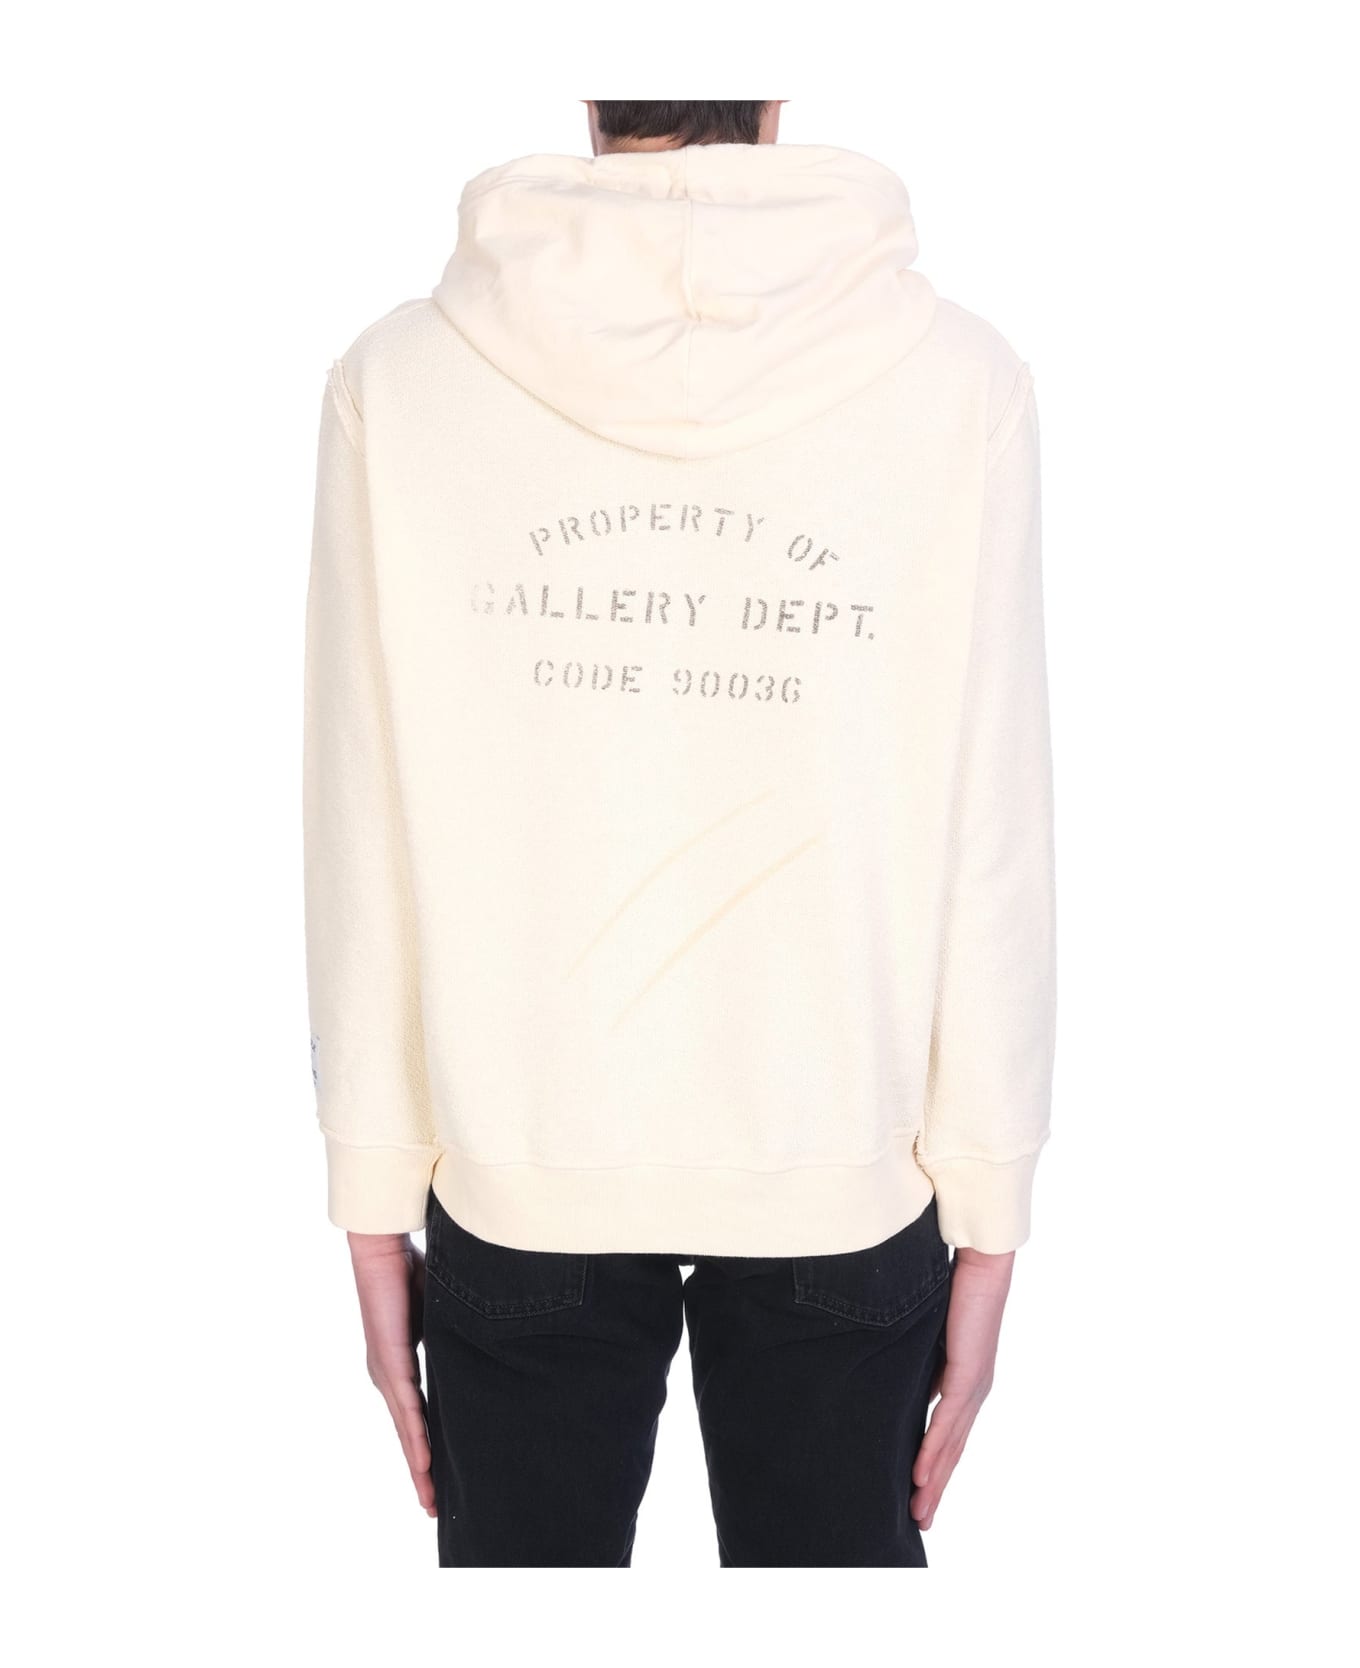 Lanvin Gallery Dept Hooded Sweatshirt - Beige